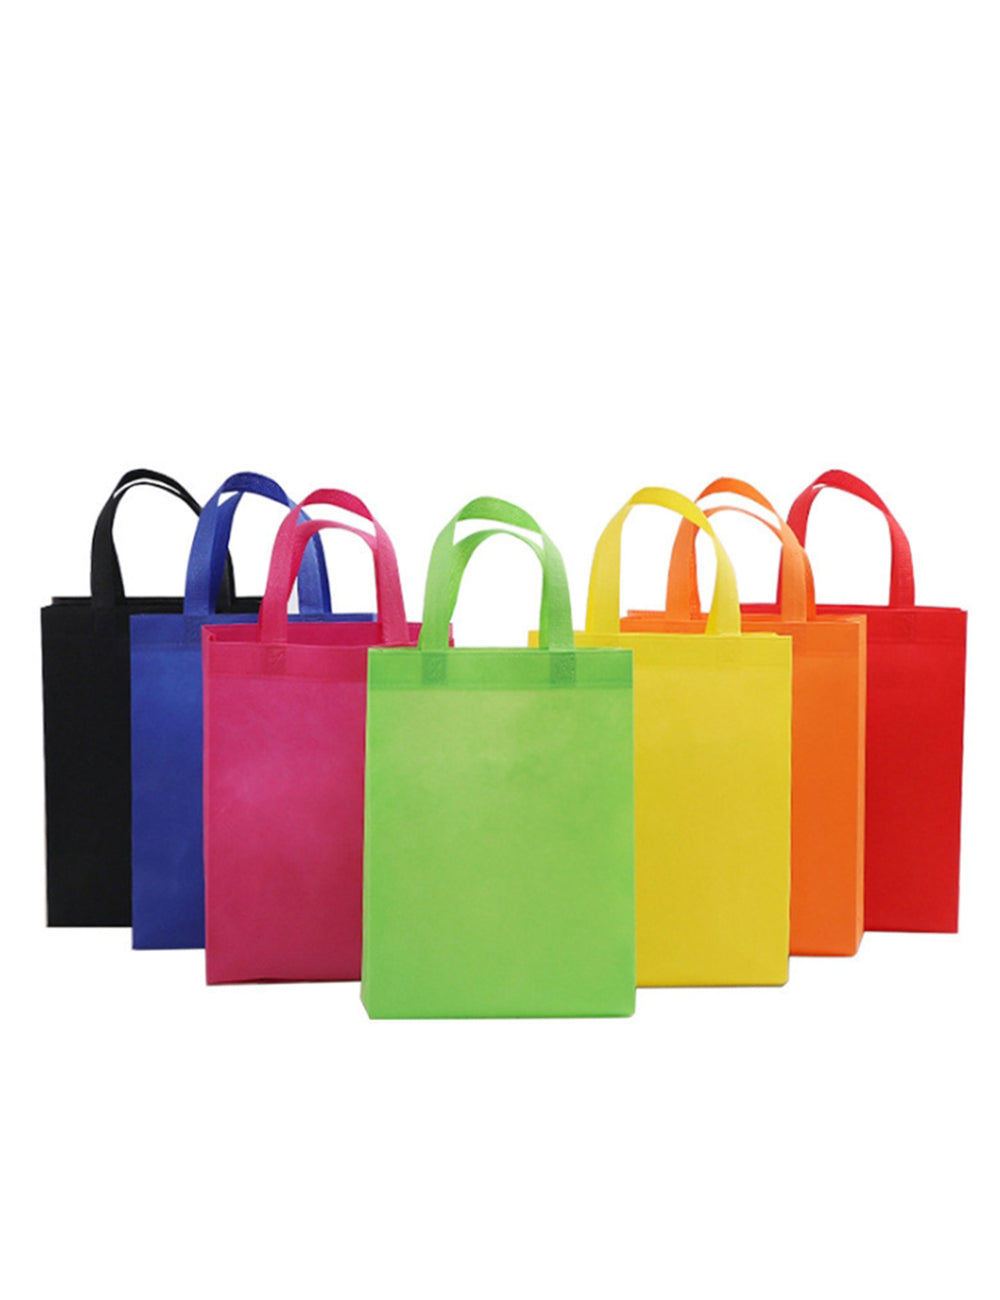 【客製化】直立式不織布環保購物袋客製化尺寸(有底有側款） | 禮品、贈品專業客製禮贈品顧問 | 禮品、贈品專屬客製禮贈品專家